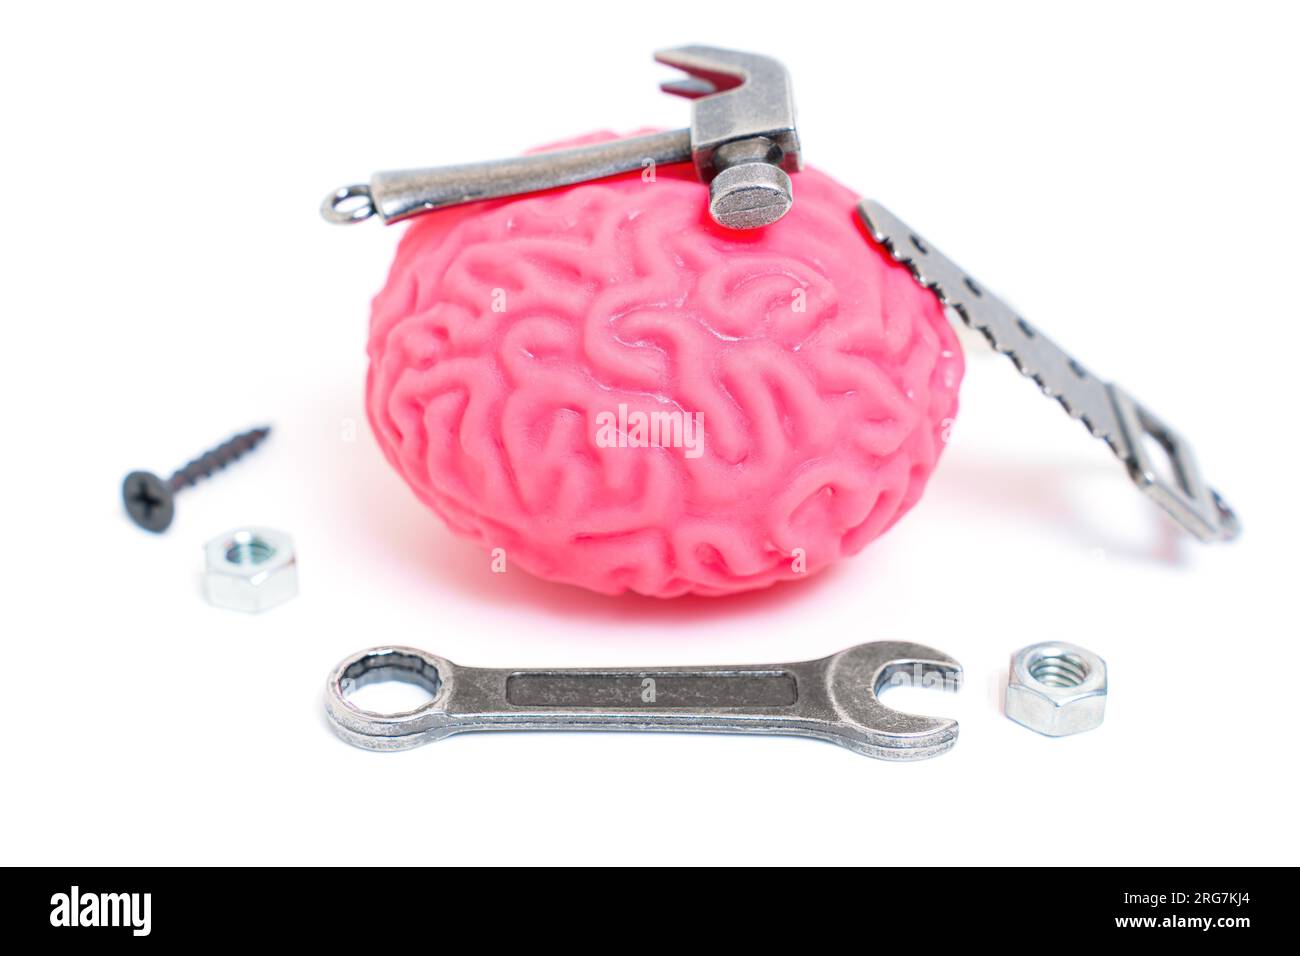 Menschliches Hirnmodell, umgeben von Miniatur-Handwerkzeugen wie Hammer, Säge, Schraubenschlüssel und Befestigungselementen, die das Konzept der Fixierung und Heilung des min symbolisieren Stockfoto